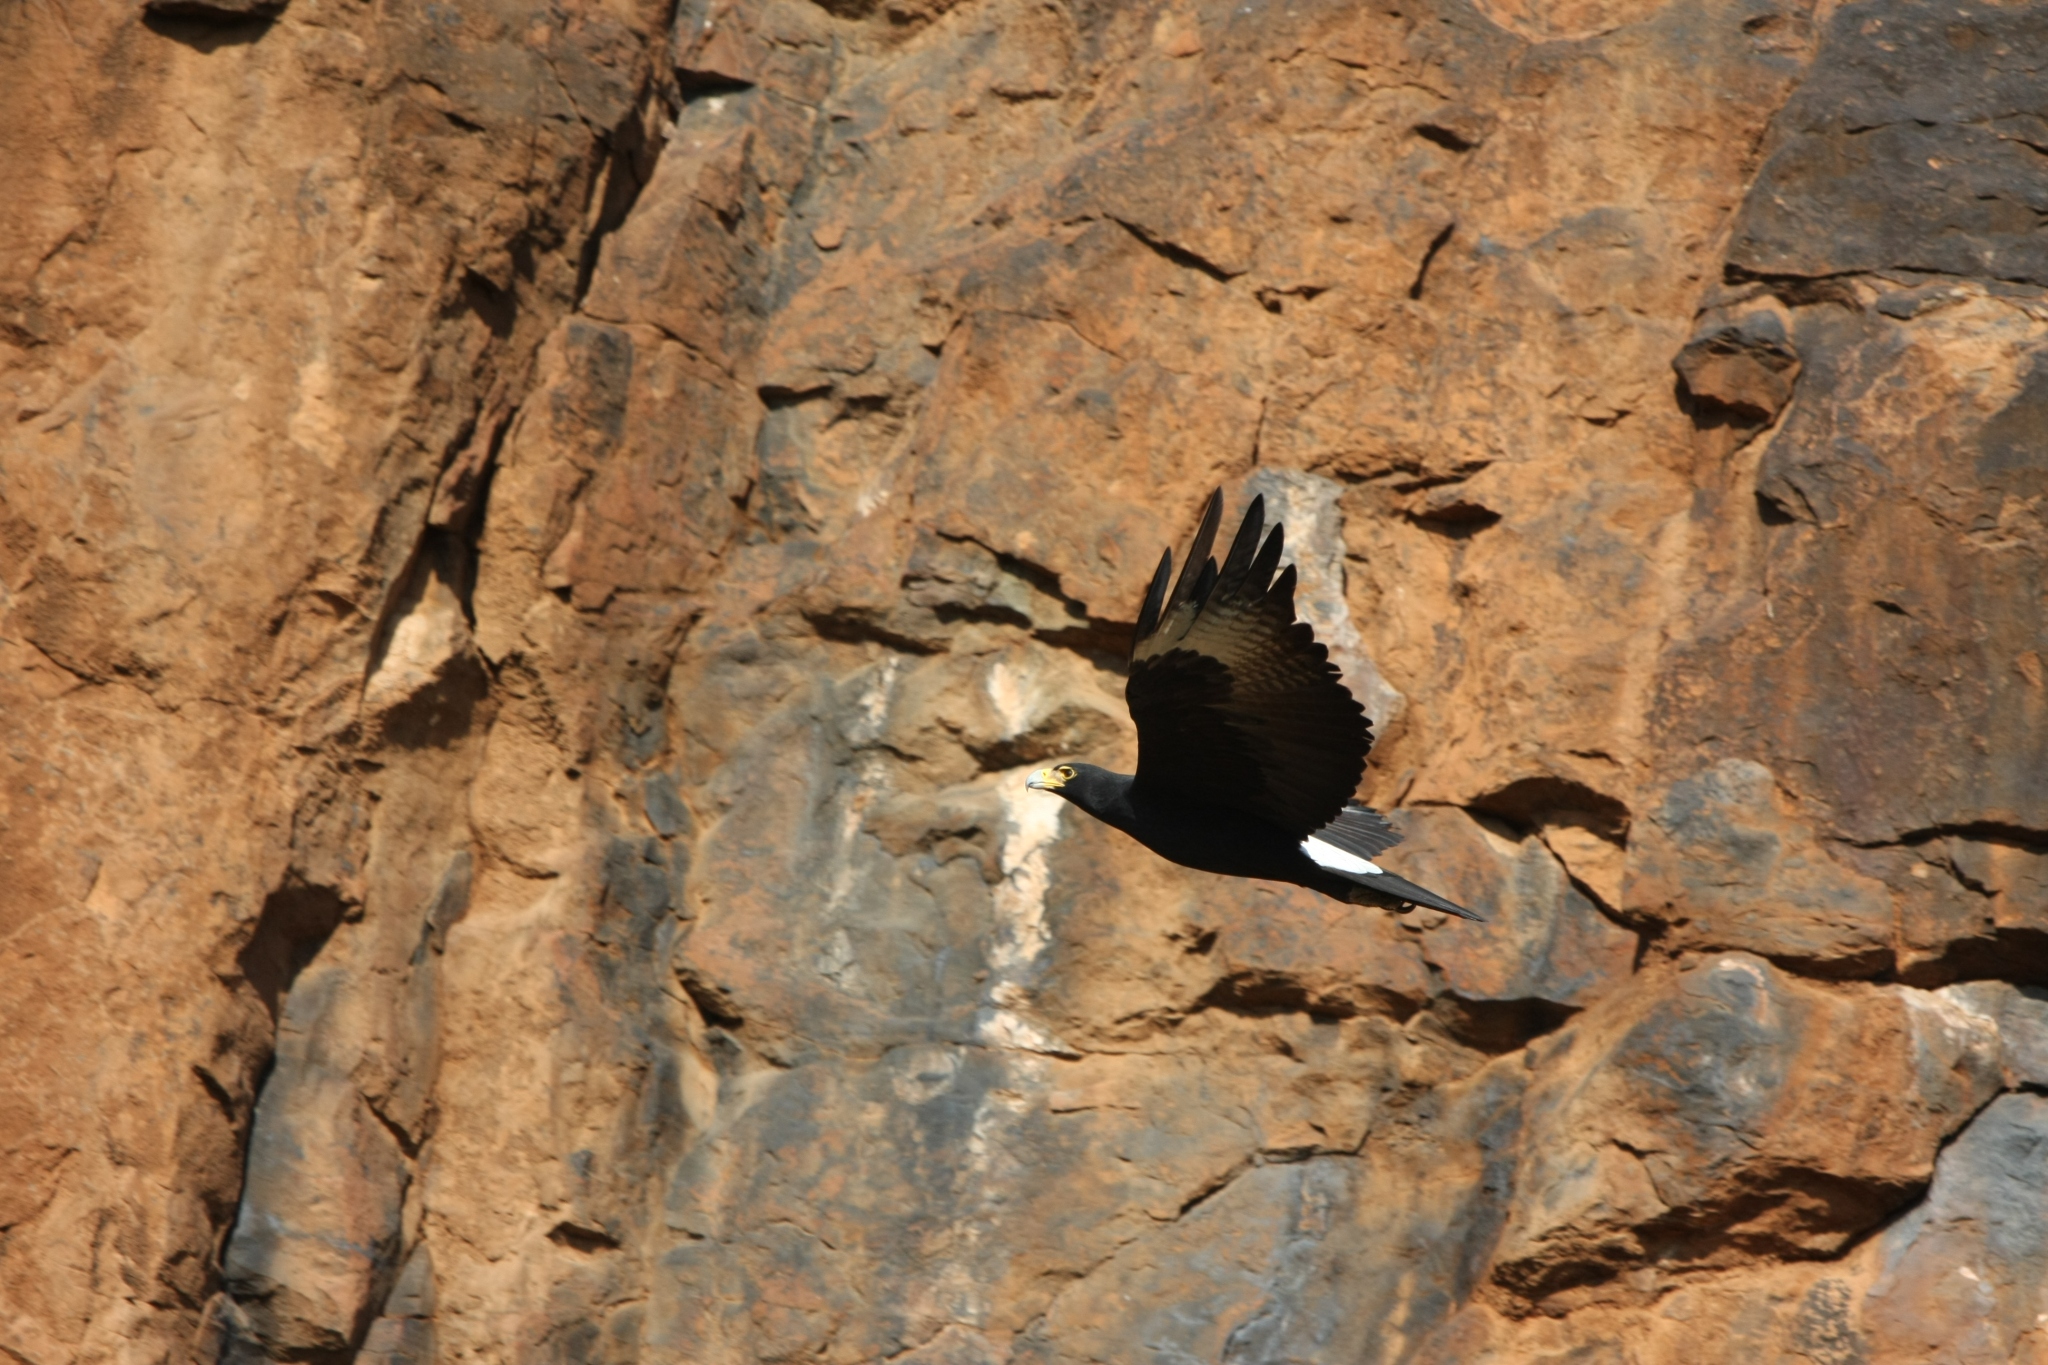 Verreaux’s Eagle, also known as Black Eagle (Aquila verreaux’s ...